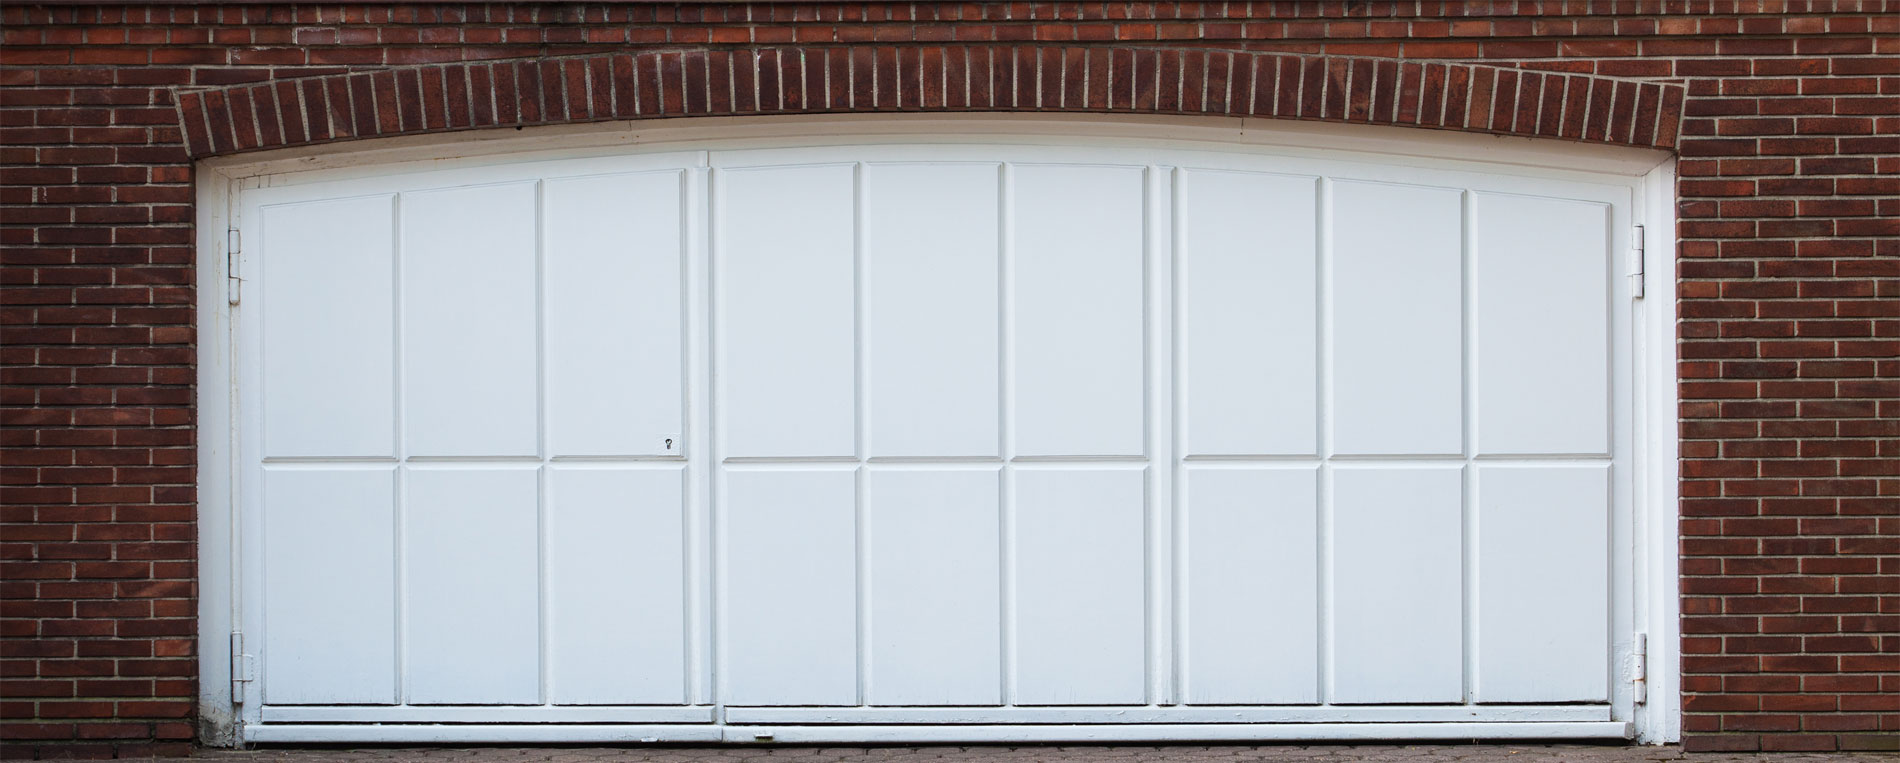 Best Newark Repair Services For Garage Doors